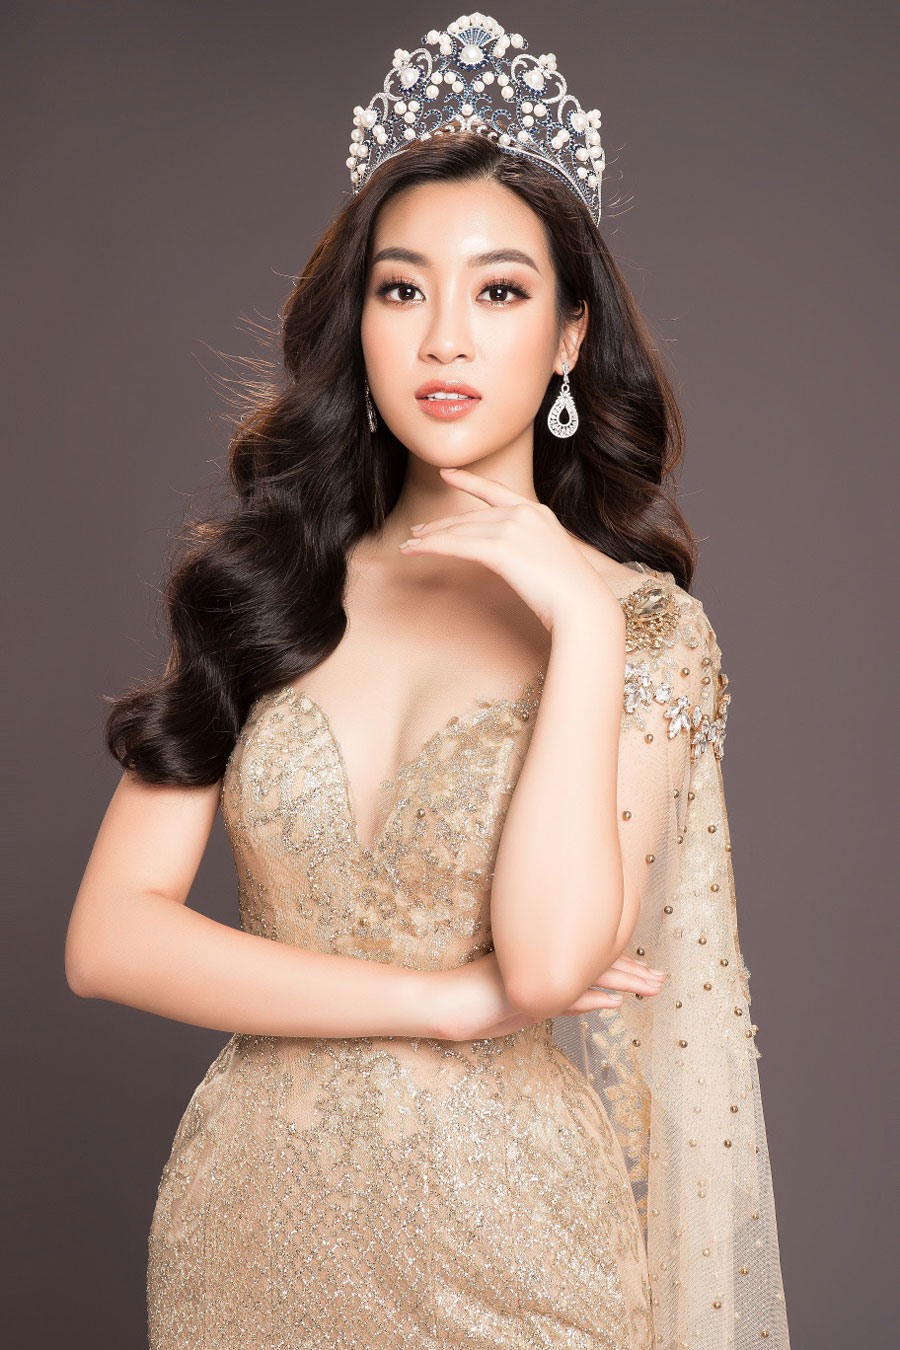 Miss Tourism Thái Lan bị tố đạo nhái vương miện của Đỗ Mỹ Linh, netizen tràn vào fanpage để khủng bố - Ảnh 5.